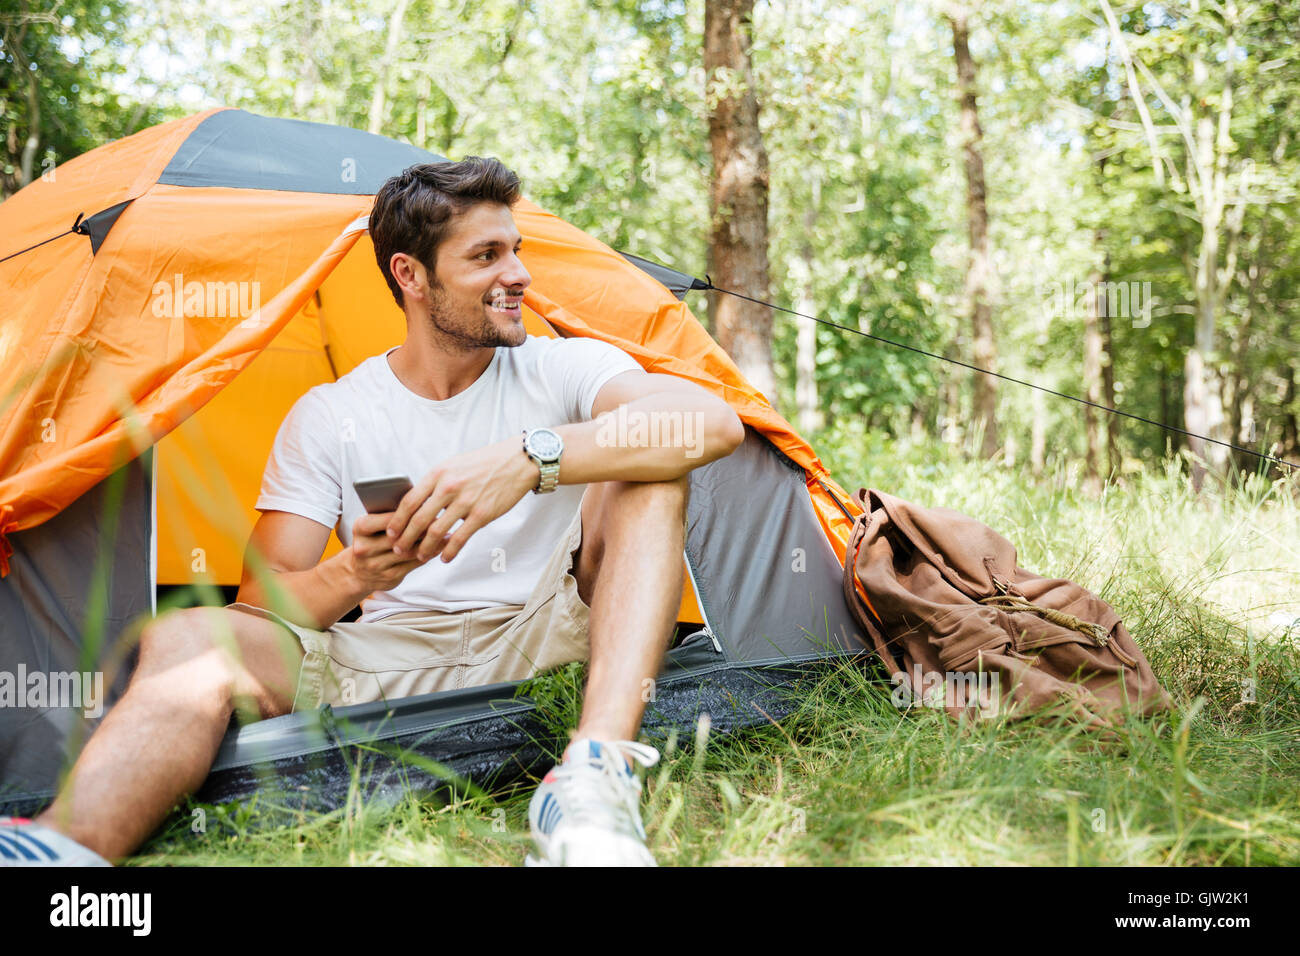 Camping men. Палатка турист. Мужчина в палатке. Образ для кемпинга мужской. Парень кемпинг.